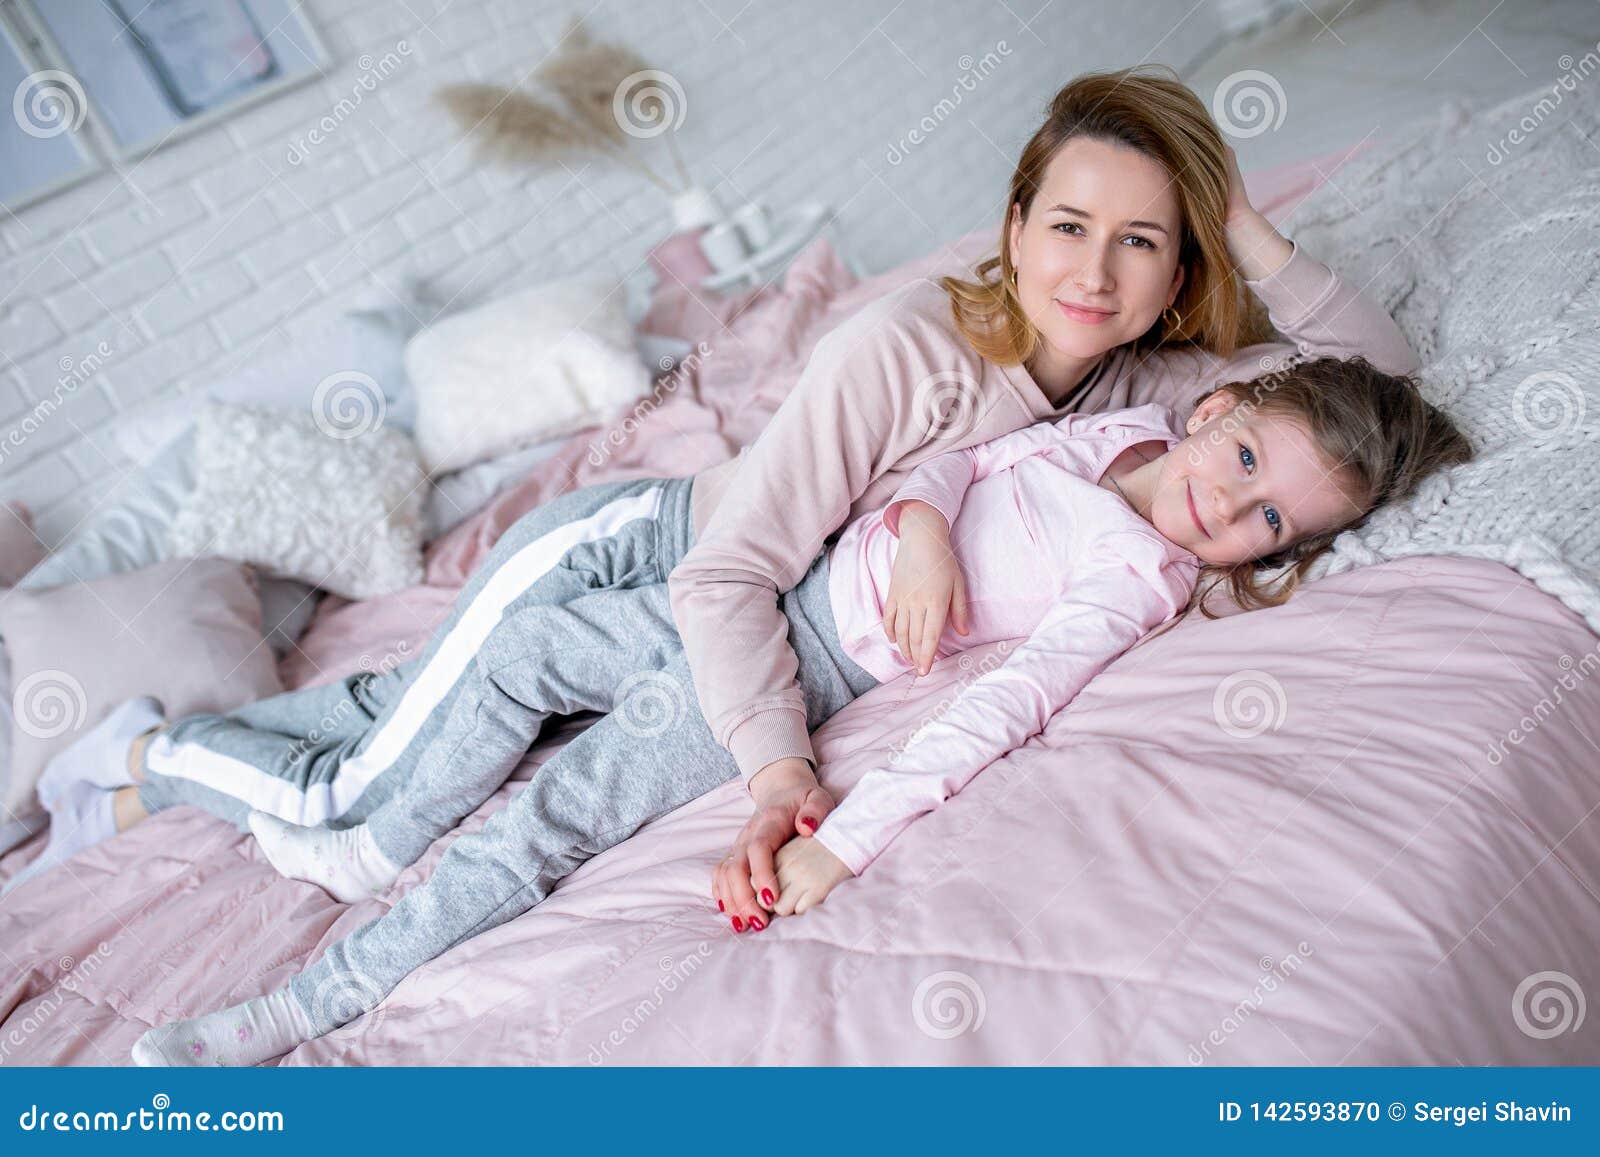 Папа в спальне дочки. Мама с дочкой лежат на кровати. Фотосессия мама и дочь в спальне. Дочка лежит на маме. Мама с дочкой фотосессия на кровати.